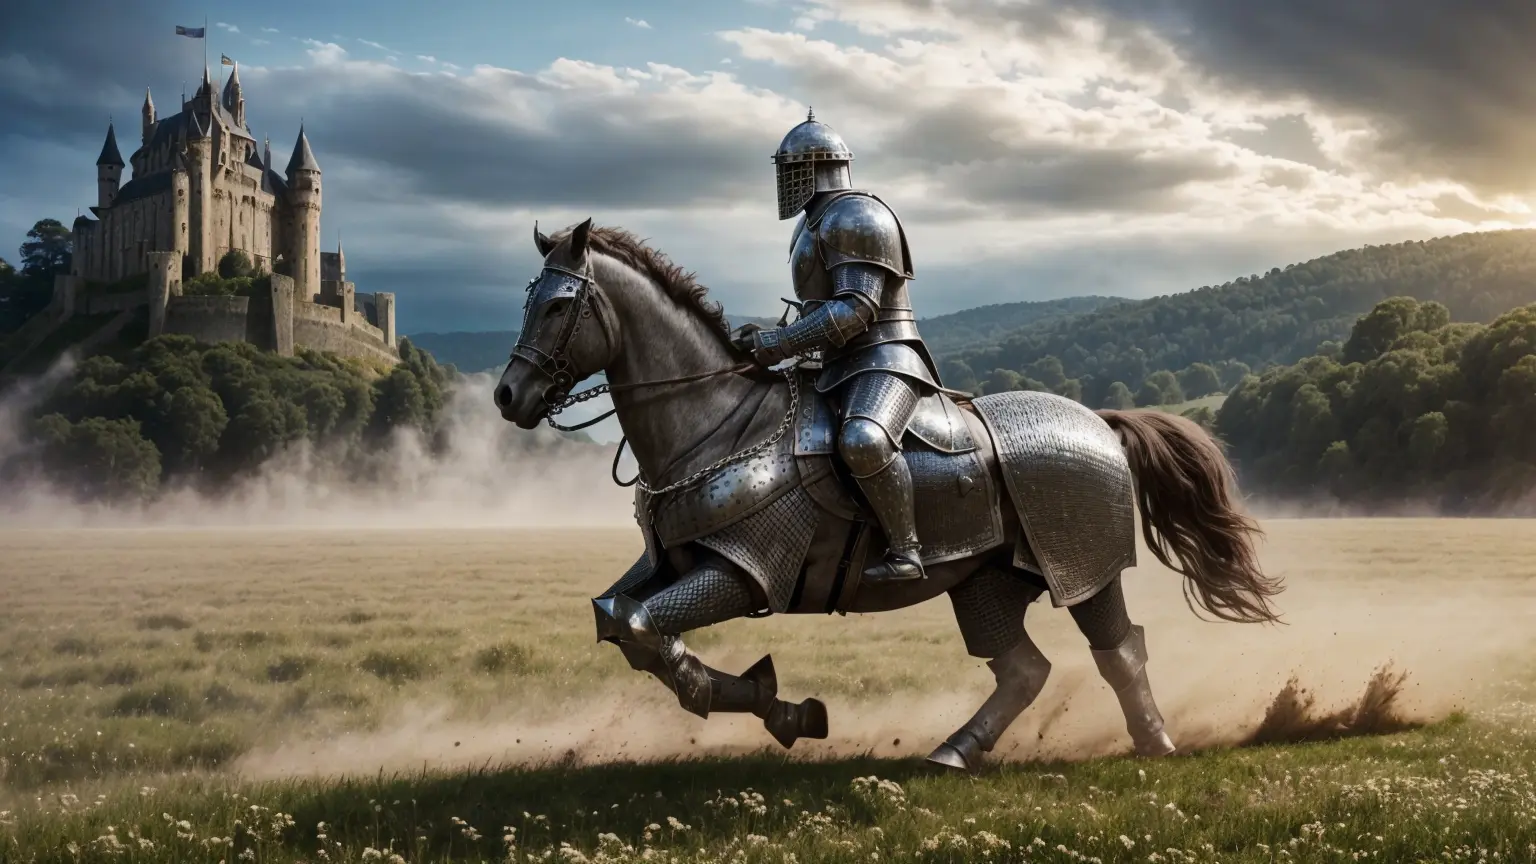 写実的な, 傑作, 映画の構成, の一般的なショット写真 (プレートアーマーの下に灰色の金属鎖帷子を身に着けて突撃する中世の騎士, 激しく叫ぶ, 誇り高く印象的な軍馬に乗せられ、牧草地を全速力で疾走します:1.3), (大きなほこりを蹴り上げ、その後に地球の塊を散乱させます:1.3), (リアルで詳細|精巧な鎧, リアルで詳細|複雑な灰色の金属の鎖かたびら:1.2), (写実的な musculature, 詳細な肌, 肌の質感, ナチュラルスキン), (アクション性の高い構成), 肌の欠点, ナチュラルスキン wrinkles, (ナチュラルスキン spots:0.4), 非常に詳細な clothes, 豊富な詳細, 複雑なディテール, 衣服のリアルなシワ, ファンタジー風景, 曇り空, 遠くの城, 明るい照明, 深い影, 劇的なシーン, ダークカラーパレット, 詳細な風景, ボリューム照明, (詳細な照明), 鎧の詳細な光の反射, 8k, 非常に詳細な, 超高解像度, 高解像度